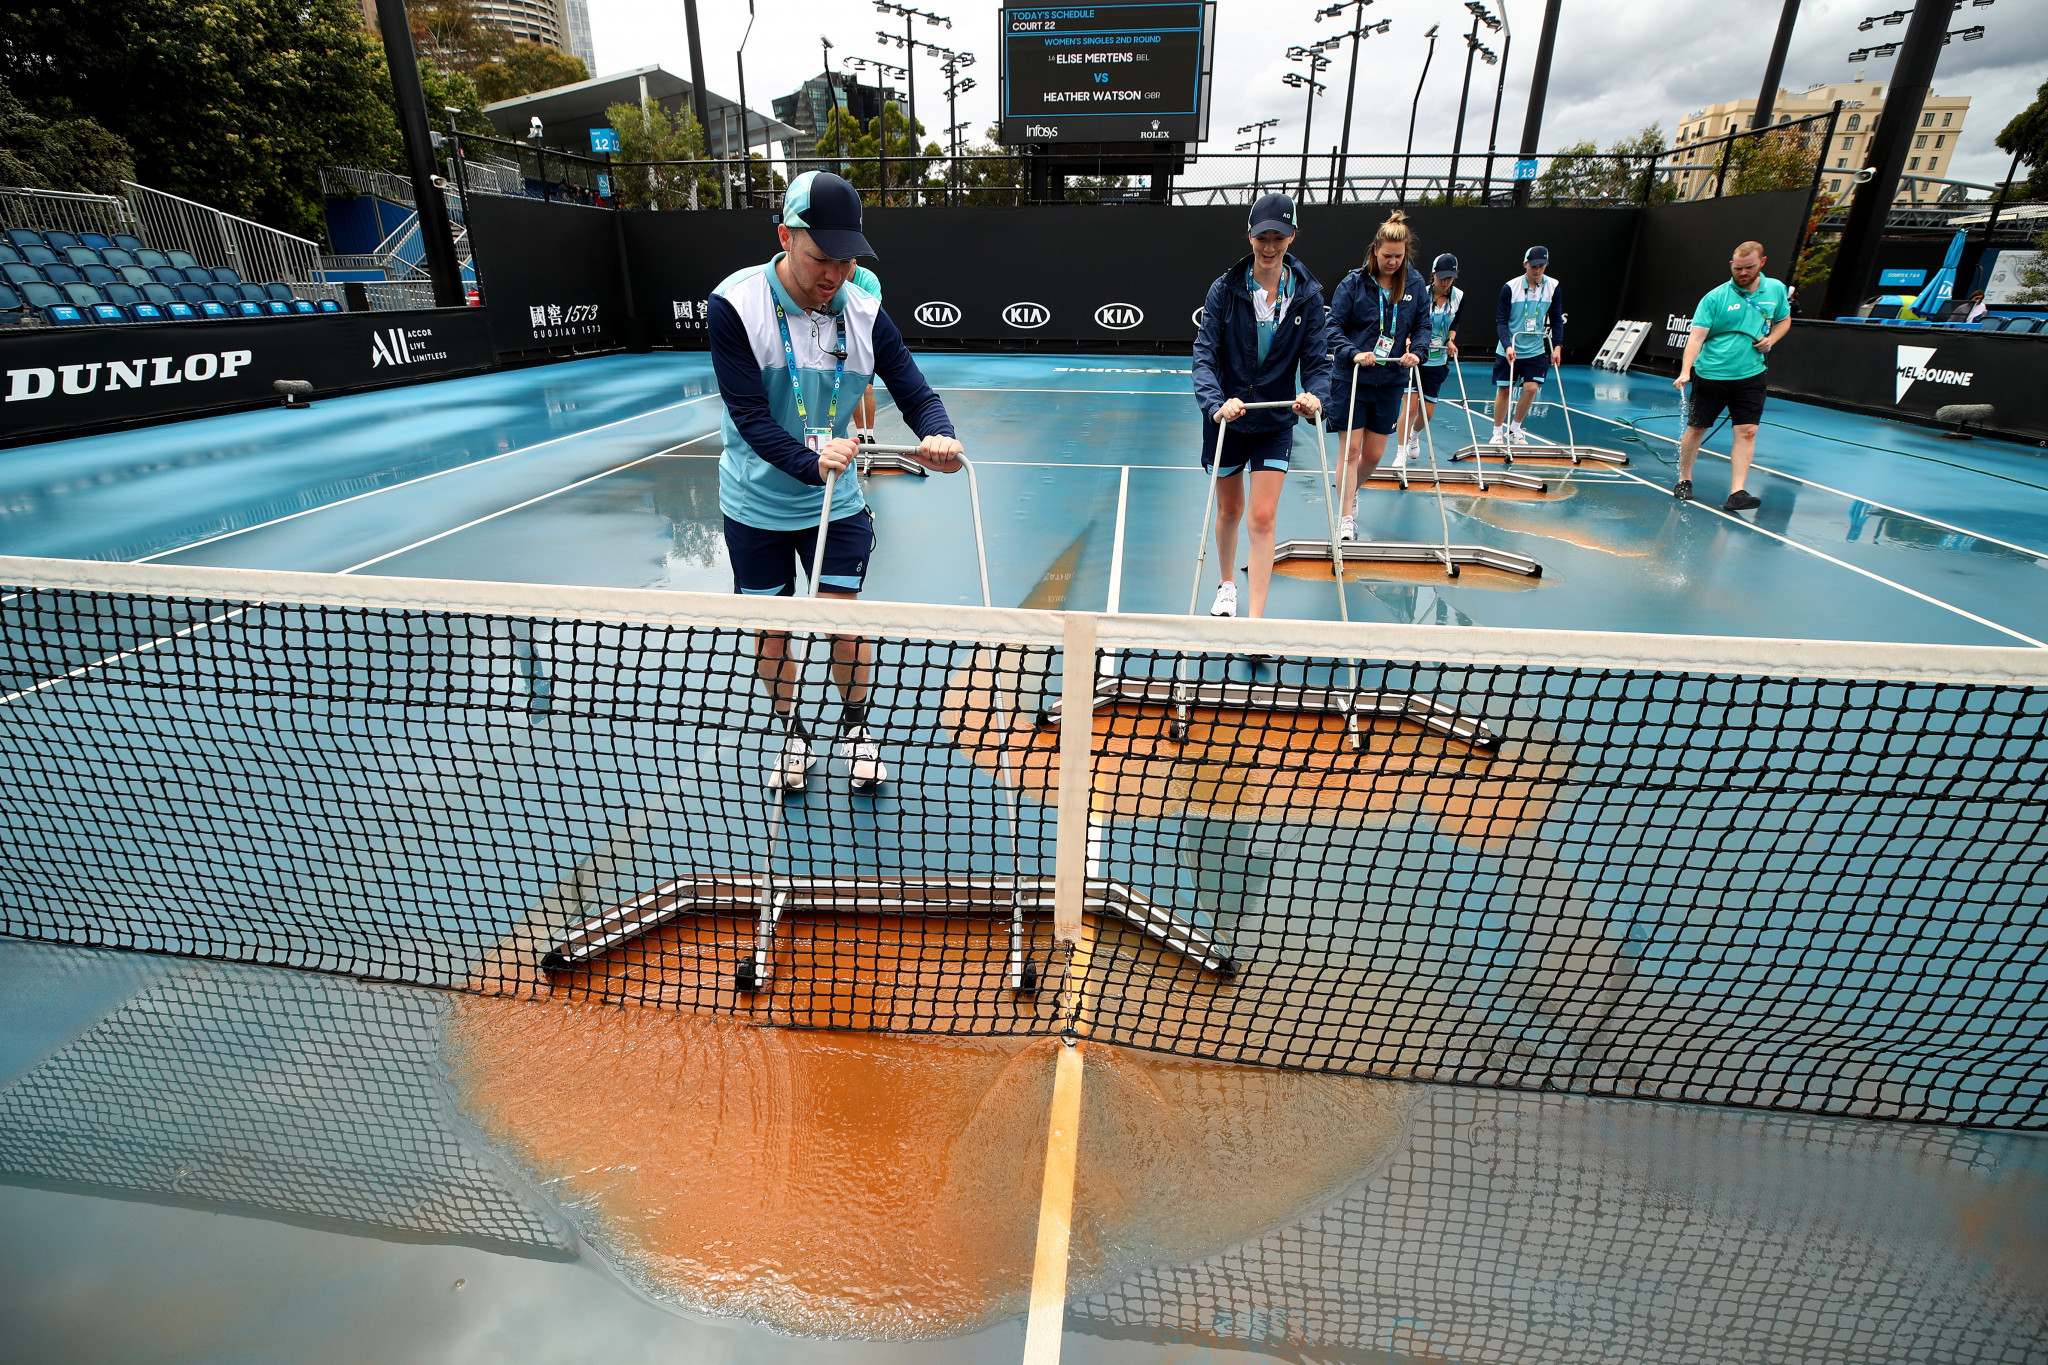 Dust settles on day four of Australian Open